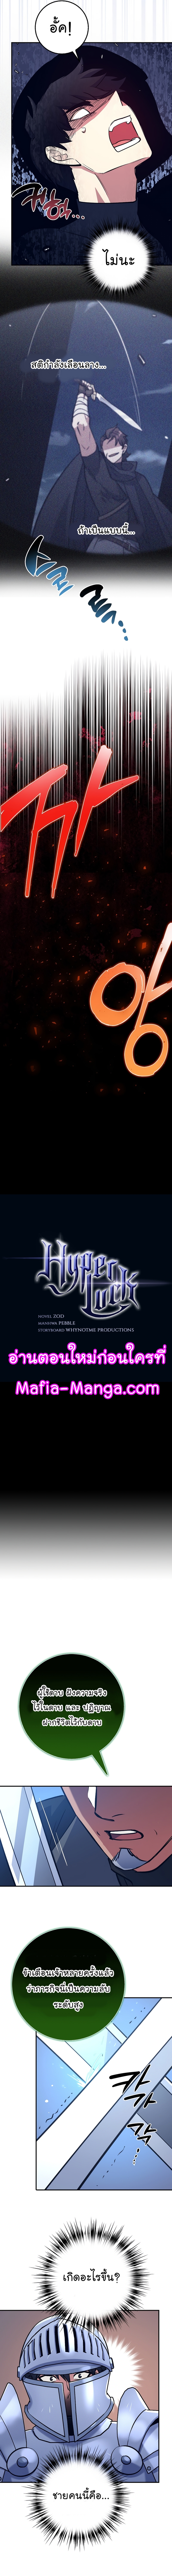 Hyper Luck 14 04